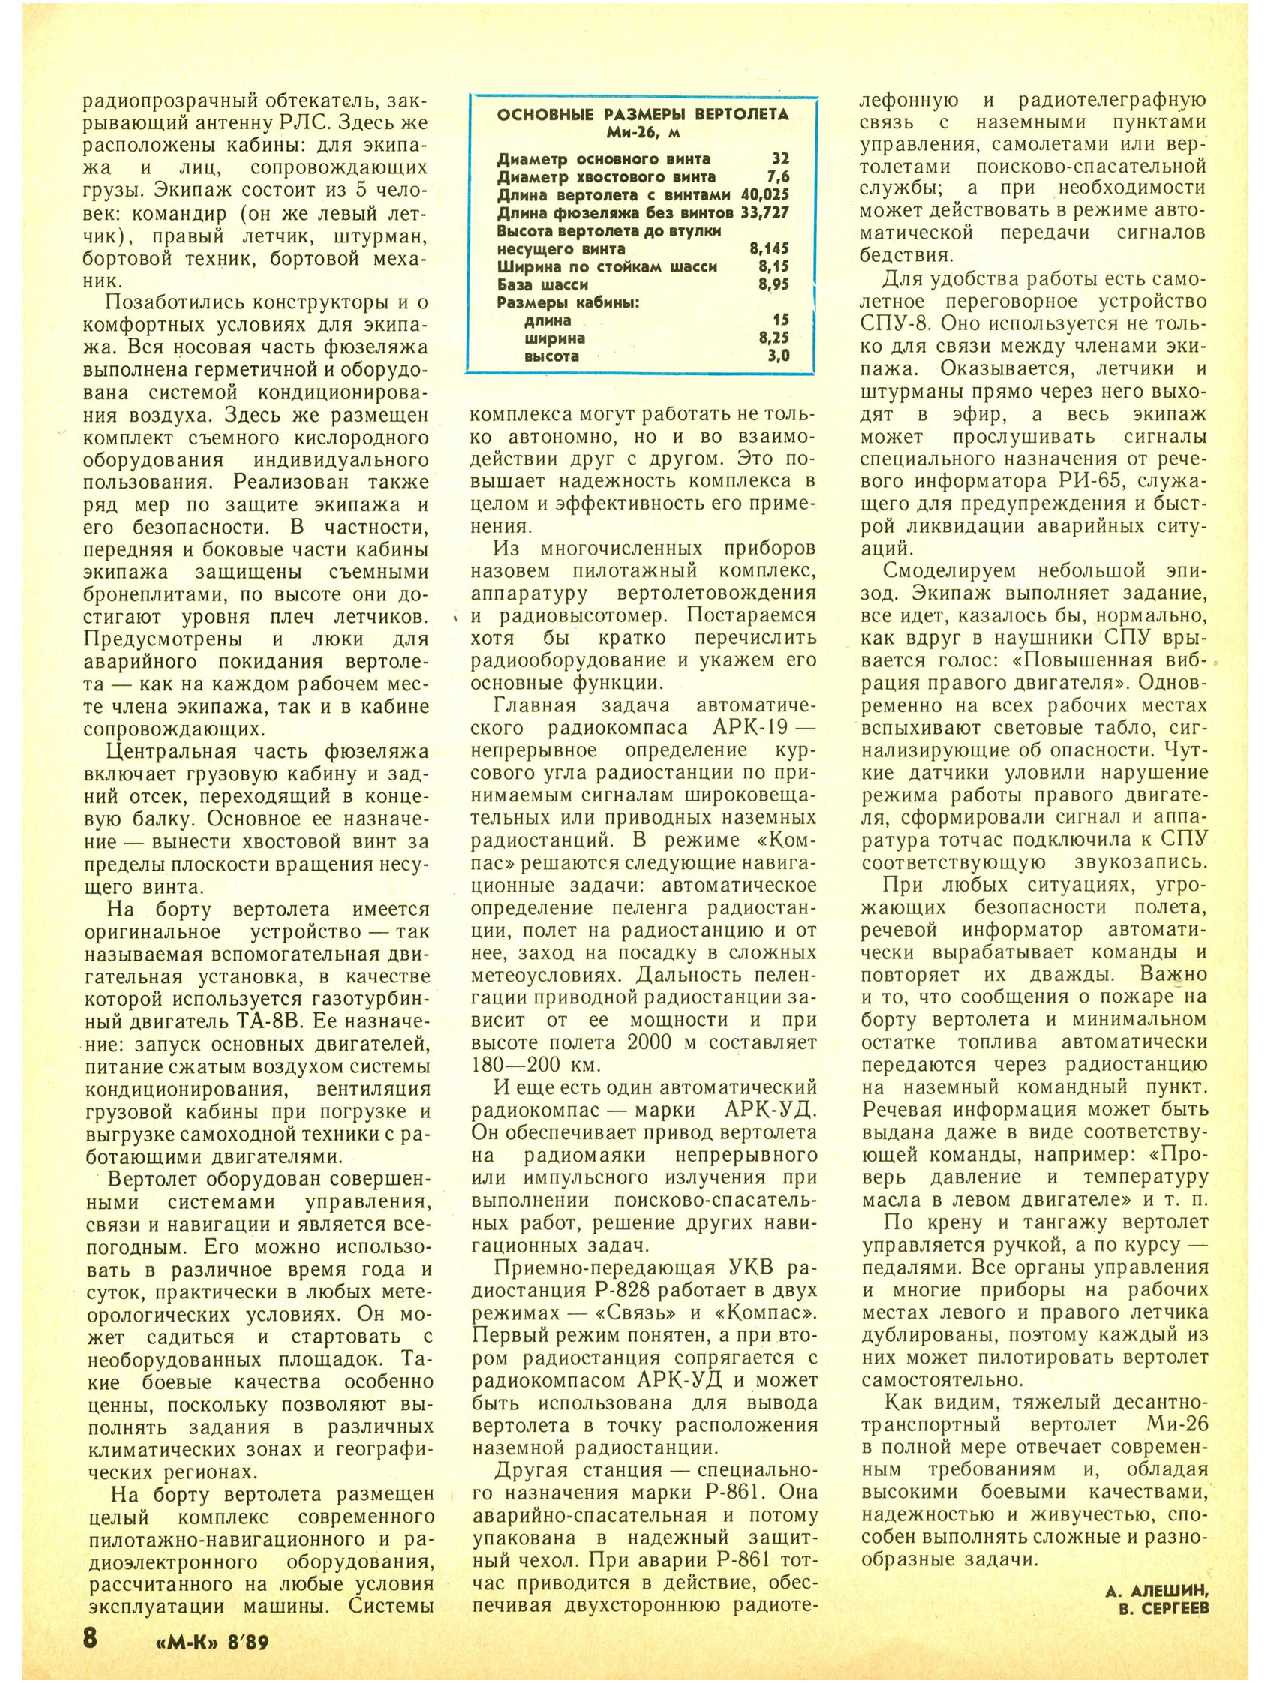 МК 8, 1989, 8 c.